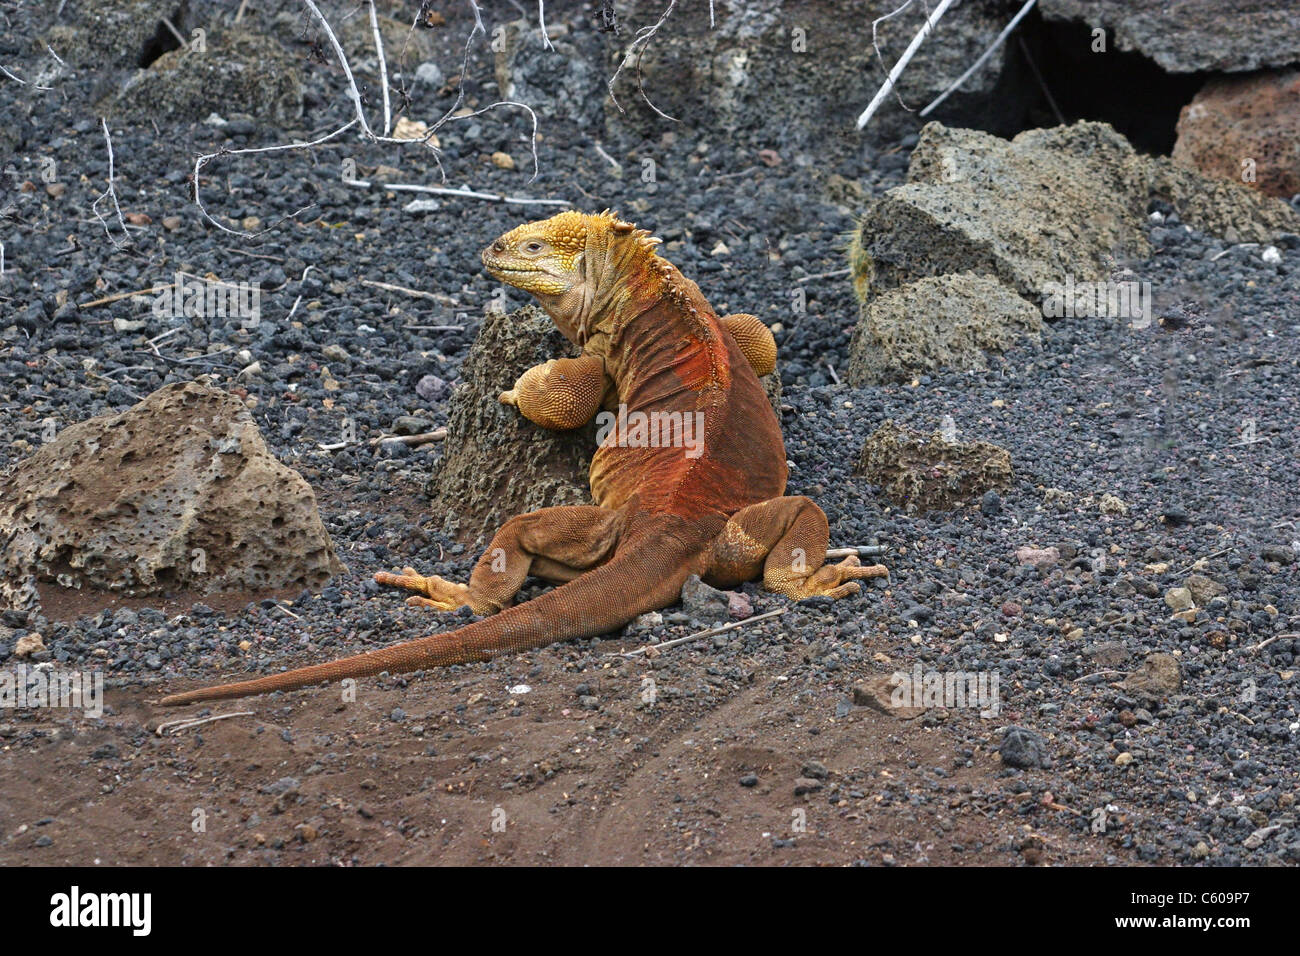 Iguane terrestre, l'île de Santa Cruz, Galapagos Islands Banque D'Images